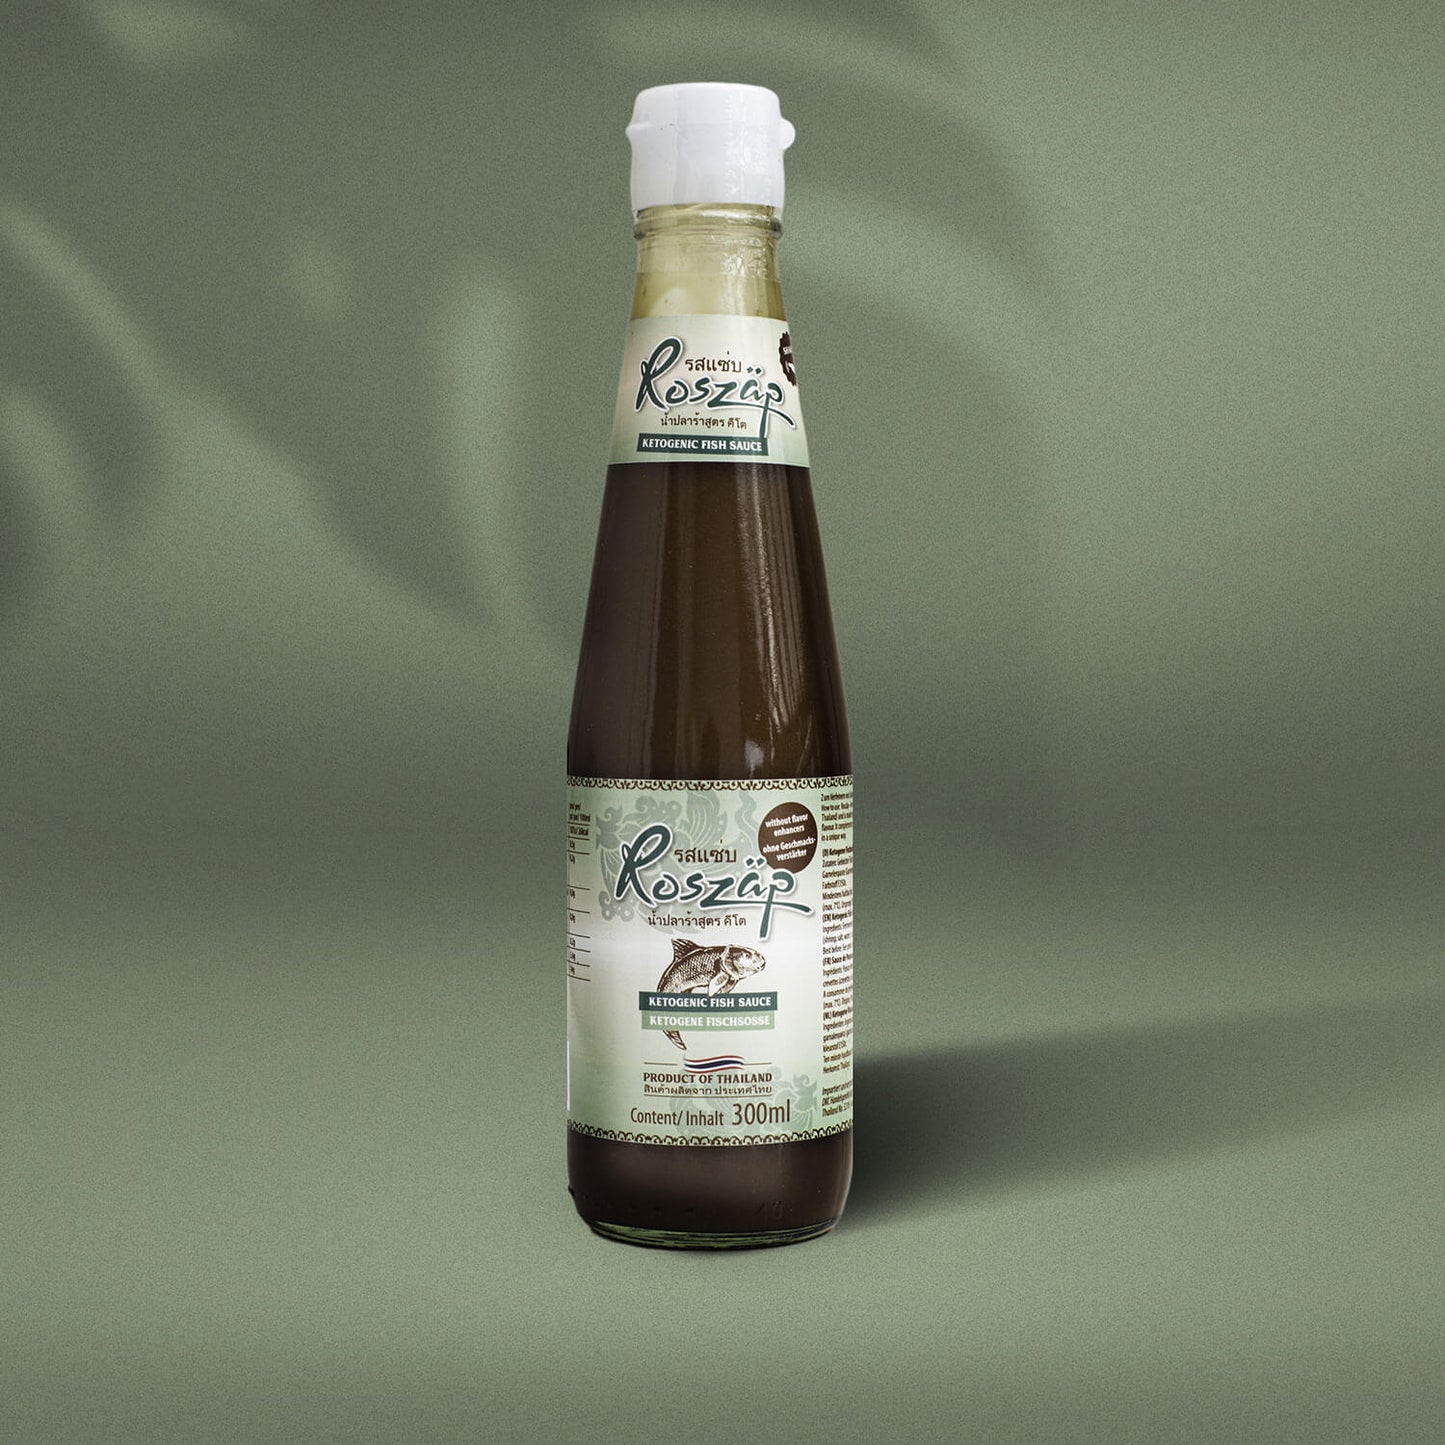 Roszäp – Fischsoße „Ketogen“ 300ml Glasflasche